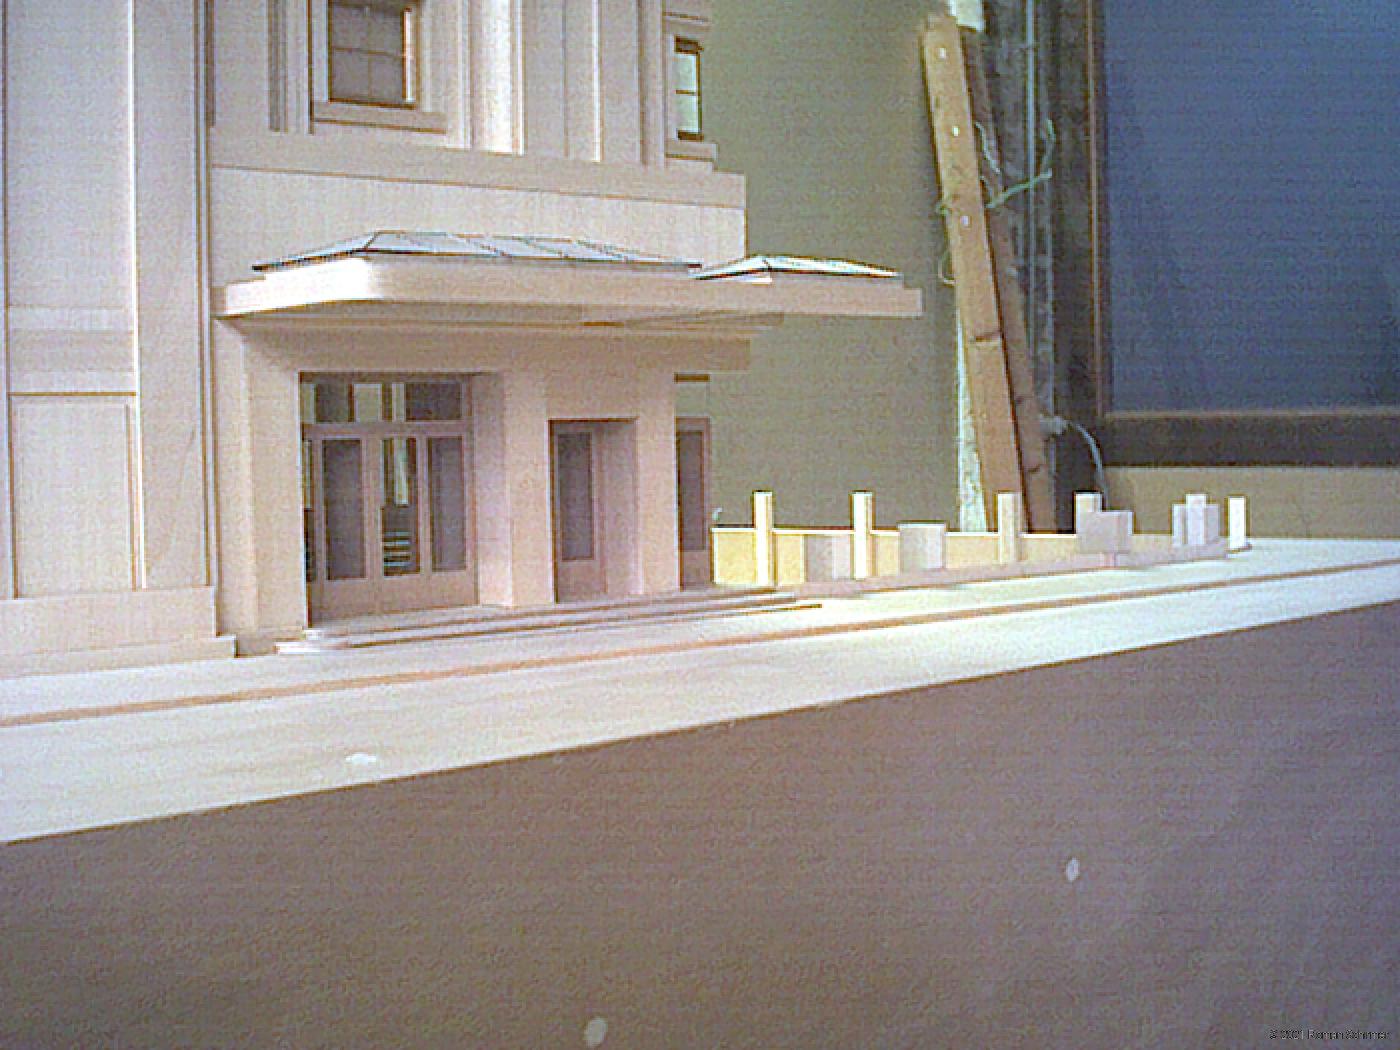 Model of the 'Théâtre des Champs-Elysées'